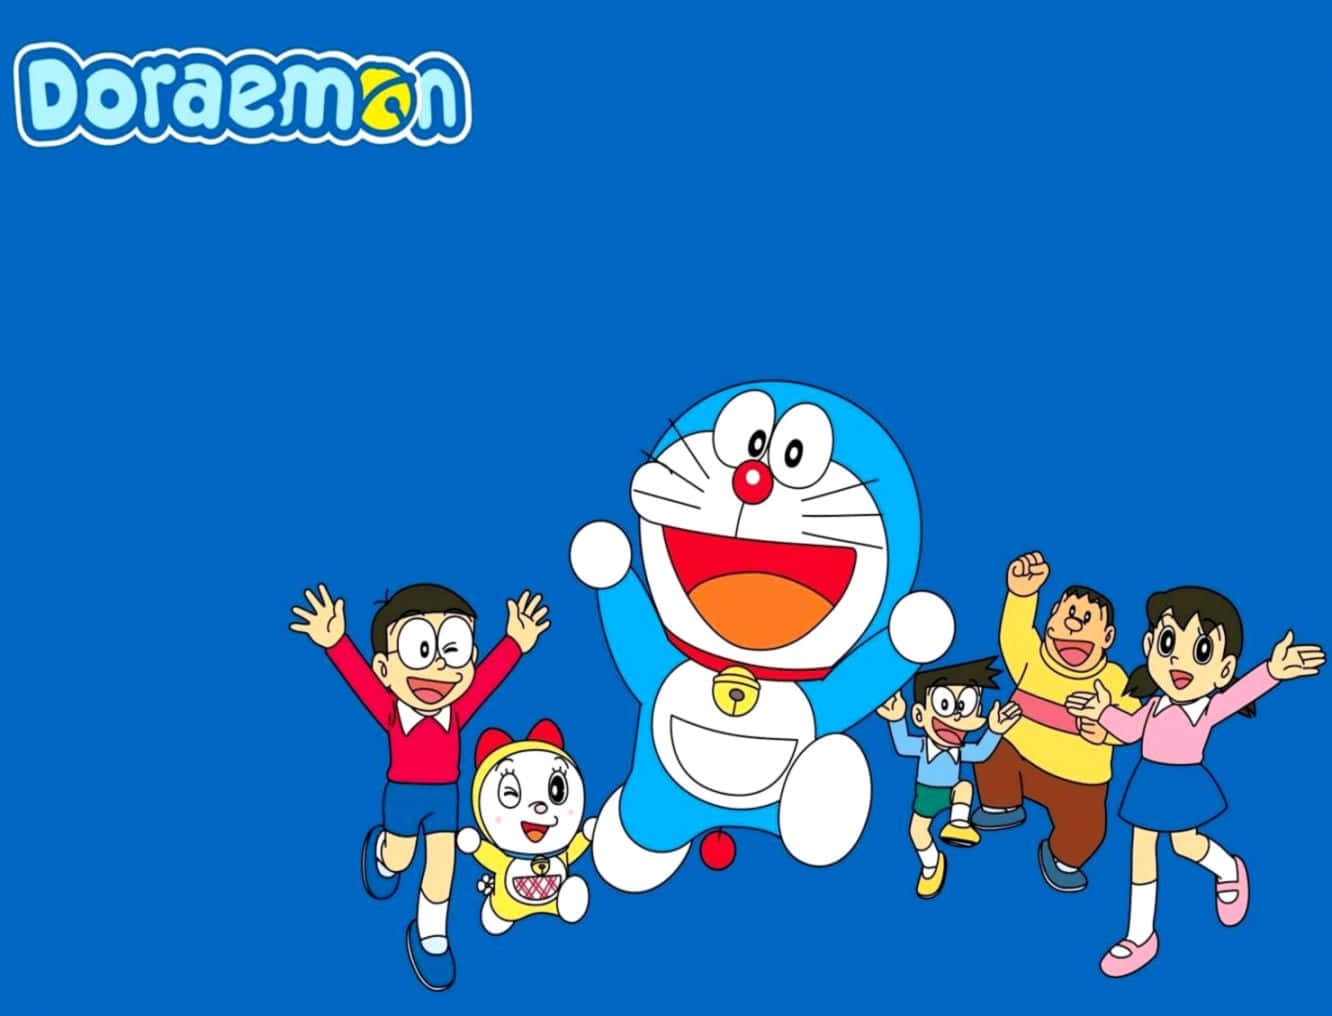 Oavsettsituation Kommer Doraemon Alltid Att Erbjuda En Lösning.